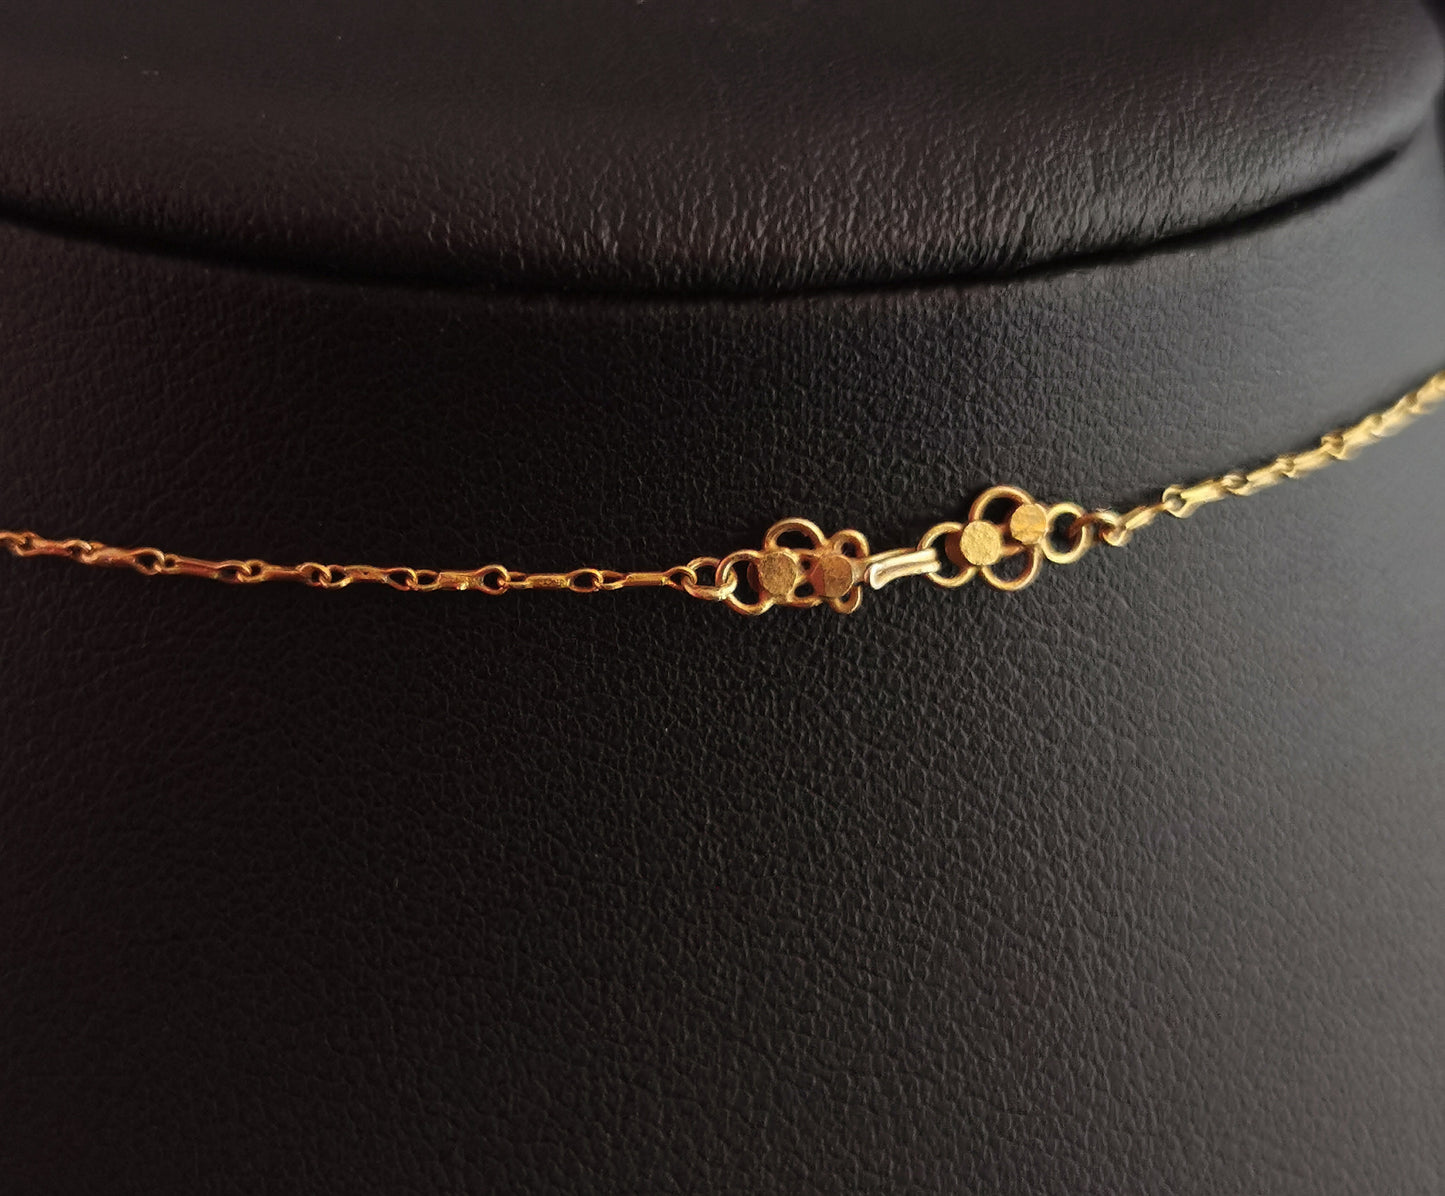 Antique 22ct gold drop necklace, floral, Art Nouveau